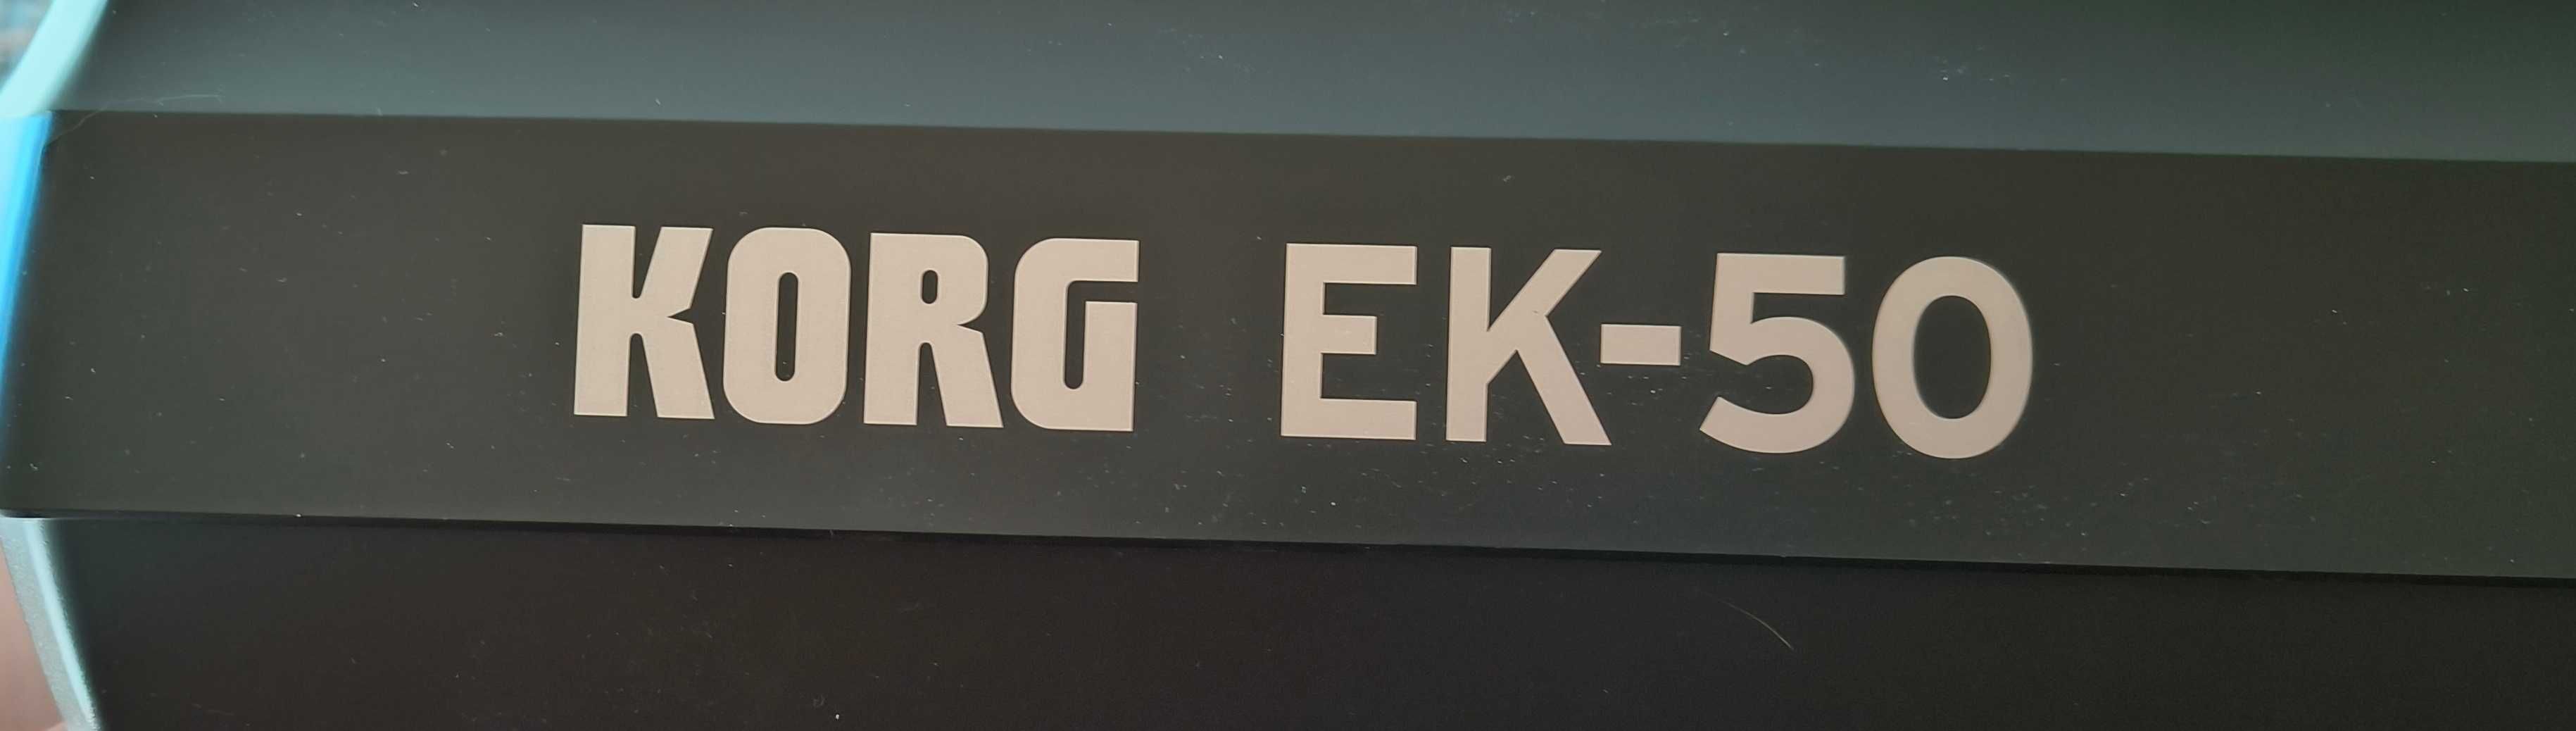 keyboard KORG EK-50 jak nowy